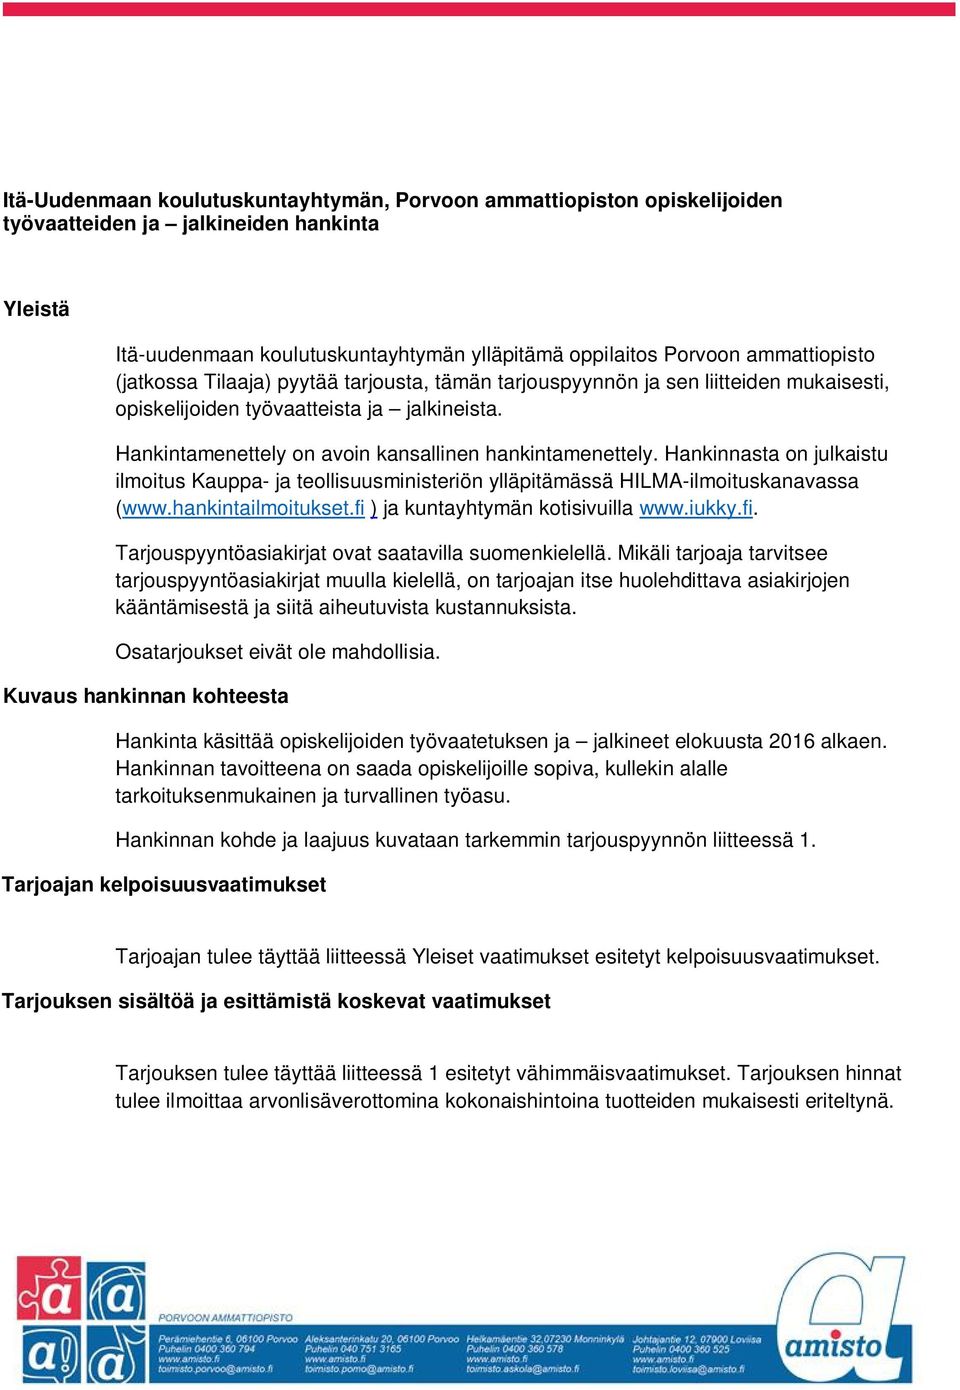 Hankinnasta on julkaistu ilmoitus Kauppa- ja teollisuusministeriön ylläpitämässä HILMA-ilmoituskanavassa (www.hankintailmoitukset.fi ) ja kuntayhtymän kotisivuilla www.iukky.fi. Tarjouspyyntöasiakirjat ovat saatavilla suomenkielellä.